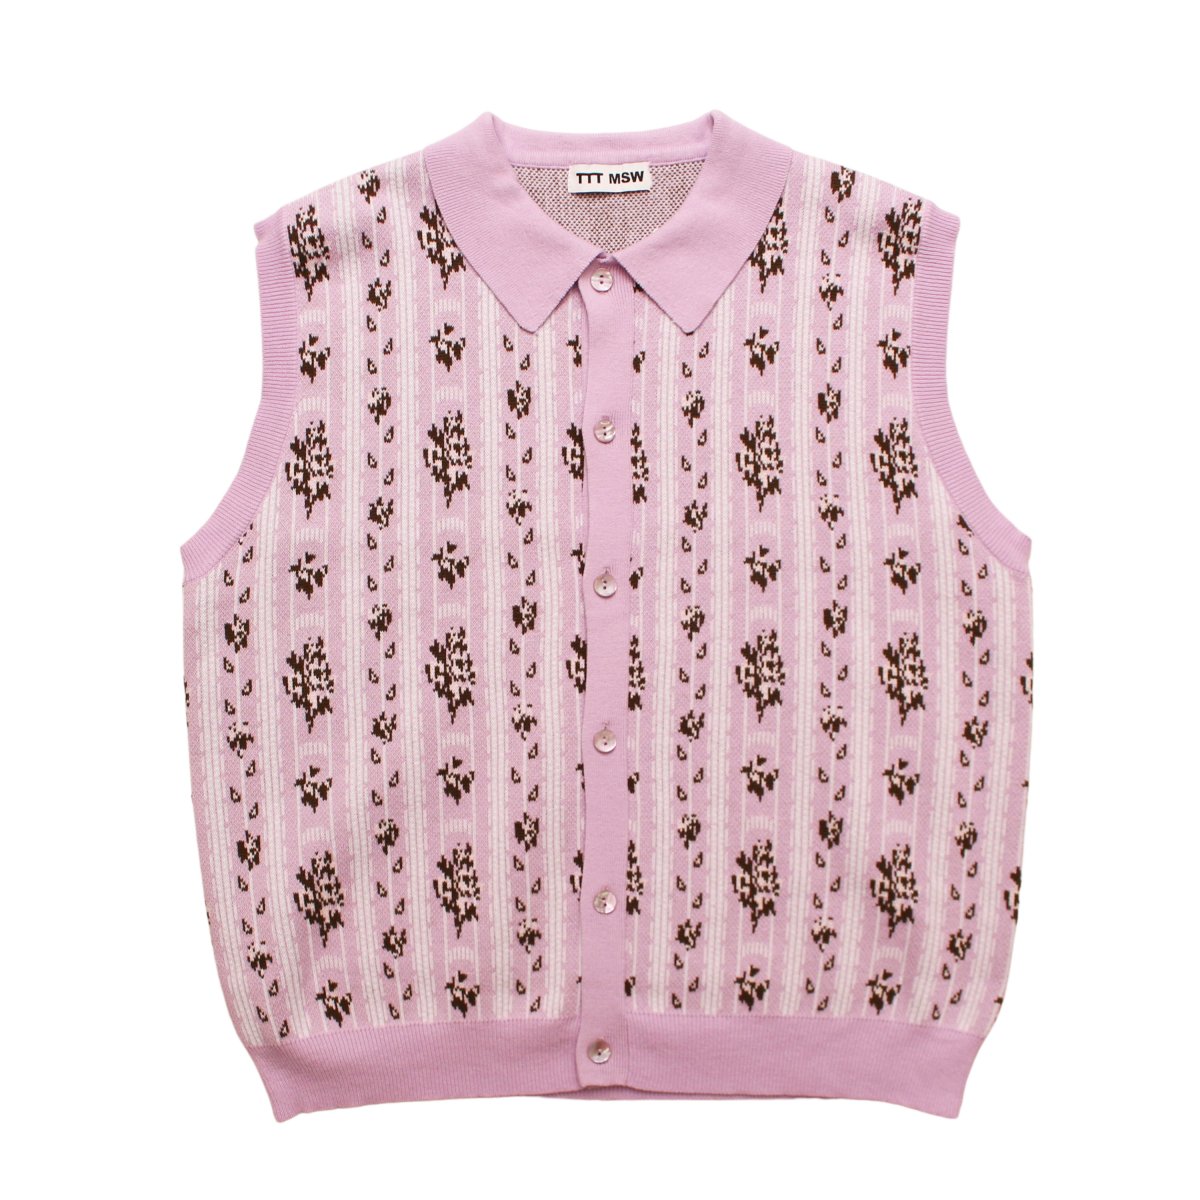 日本製品 TTT_MSW / Flower Jacquard Knit Vest ベスト